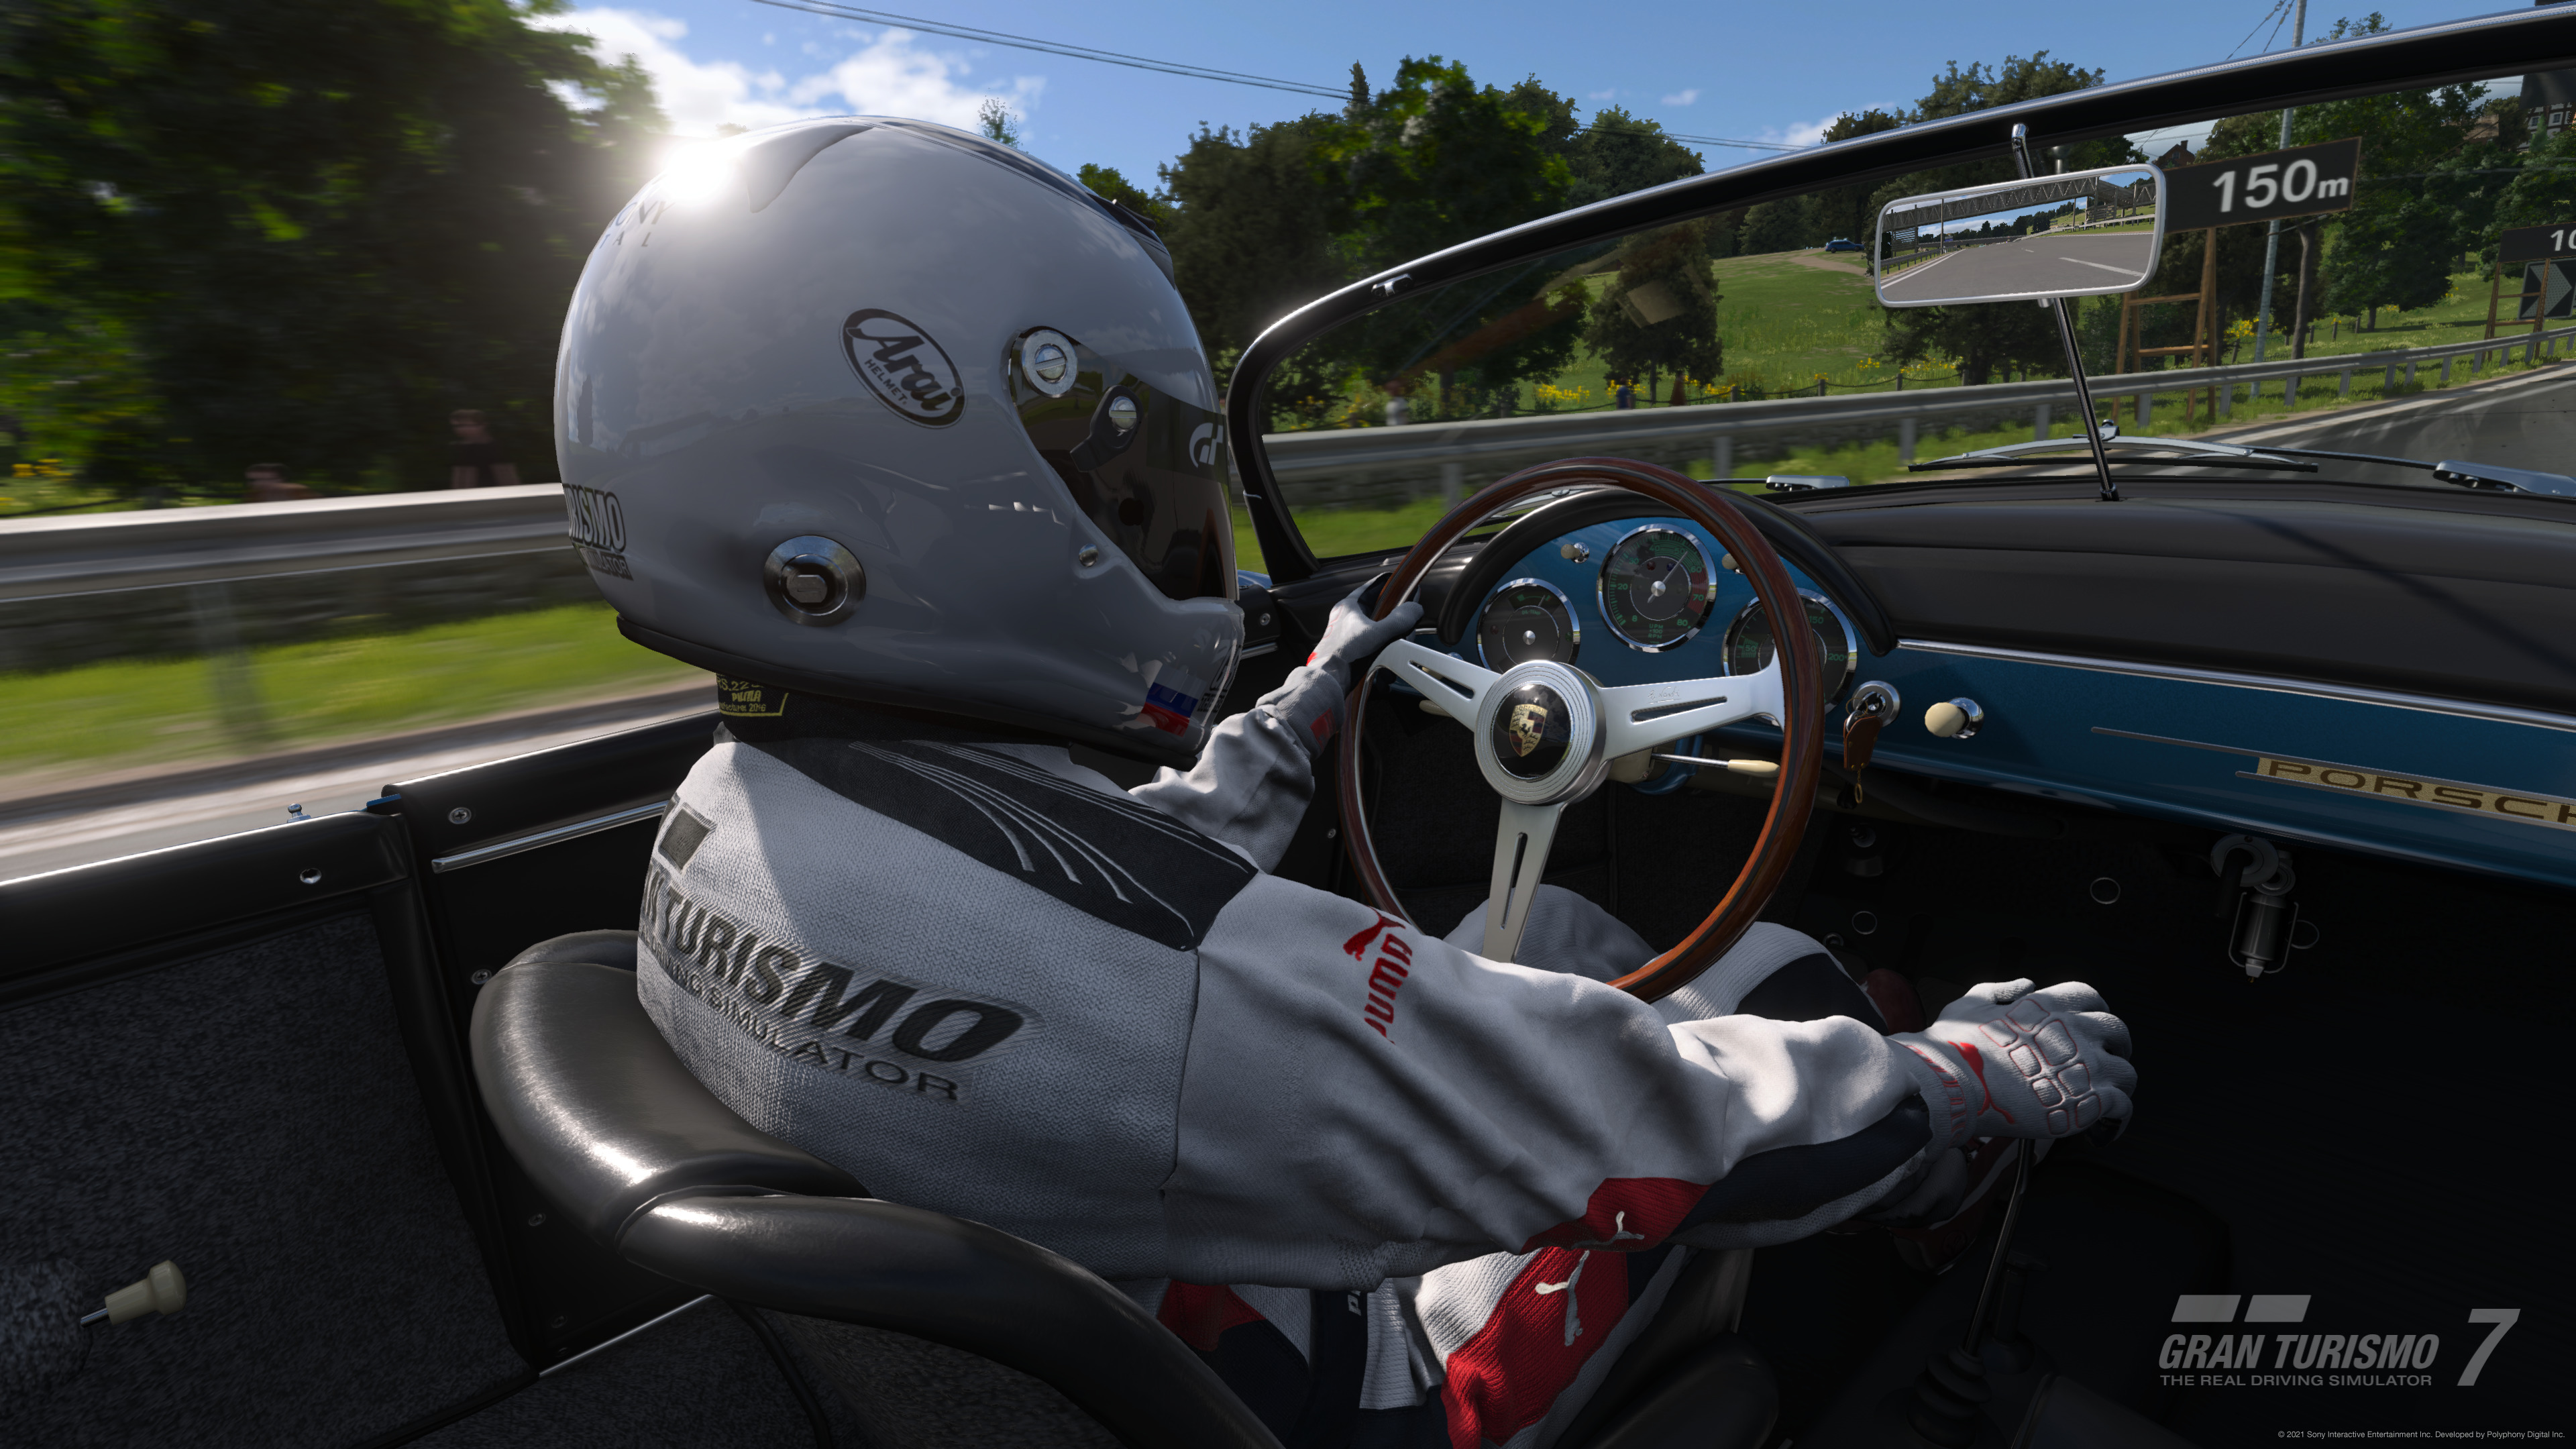 Возвращение к корням: Обзор Gran Turismo 7